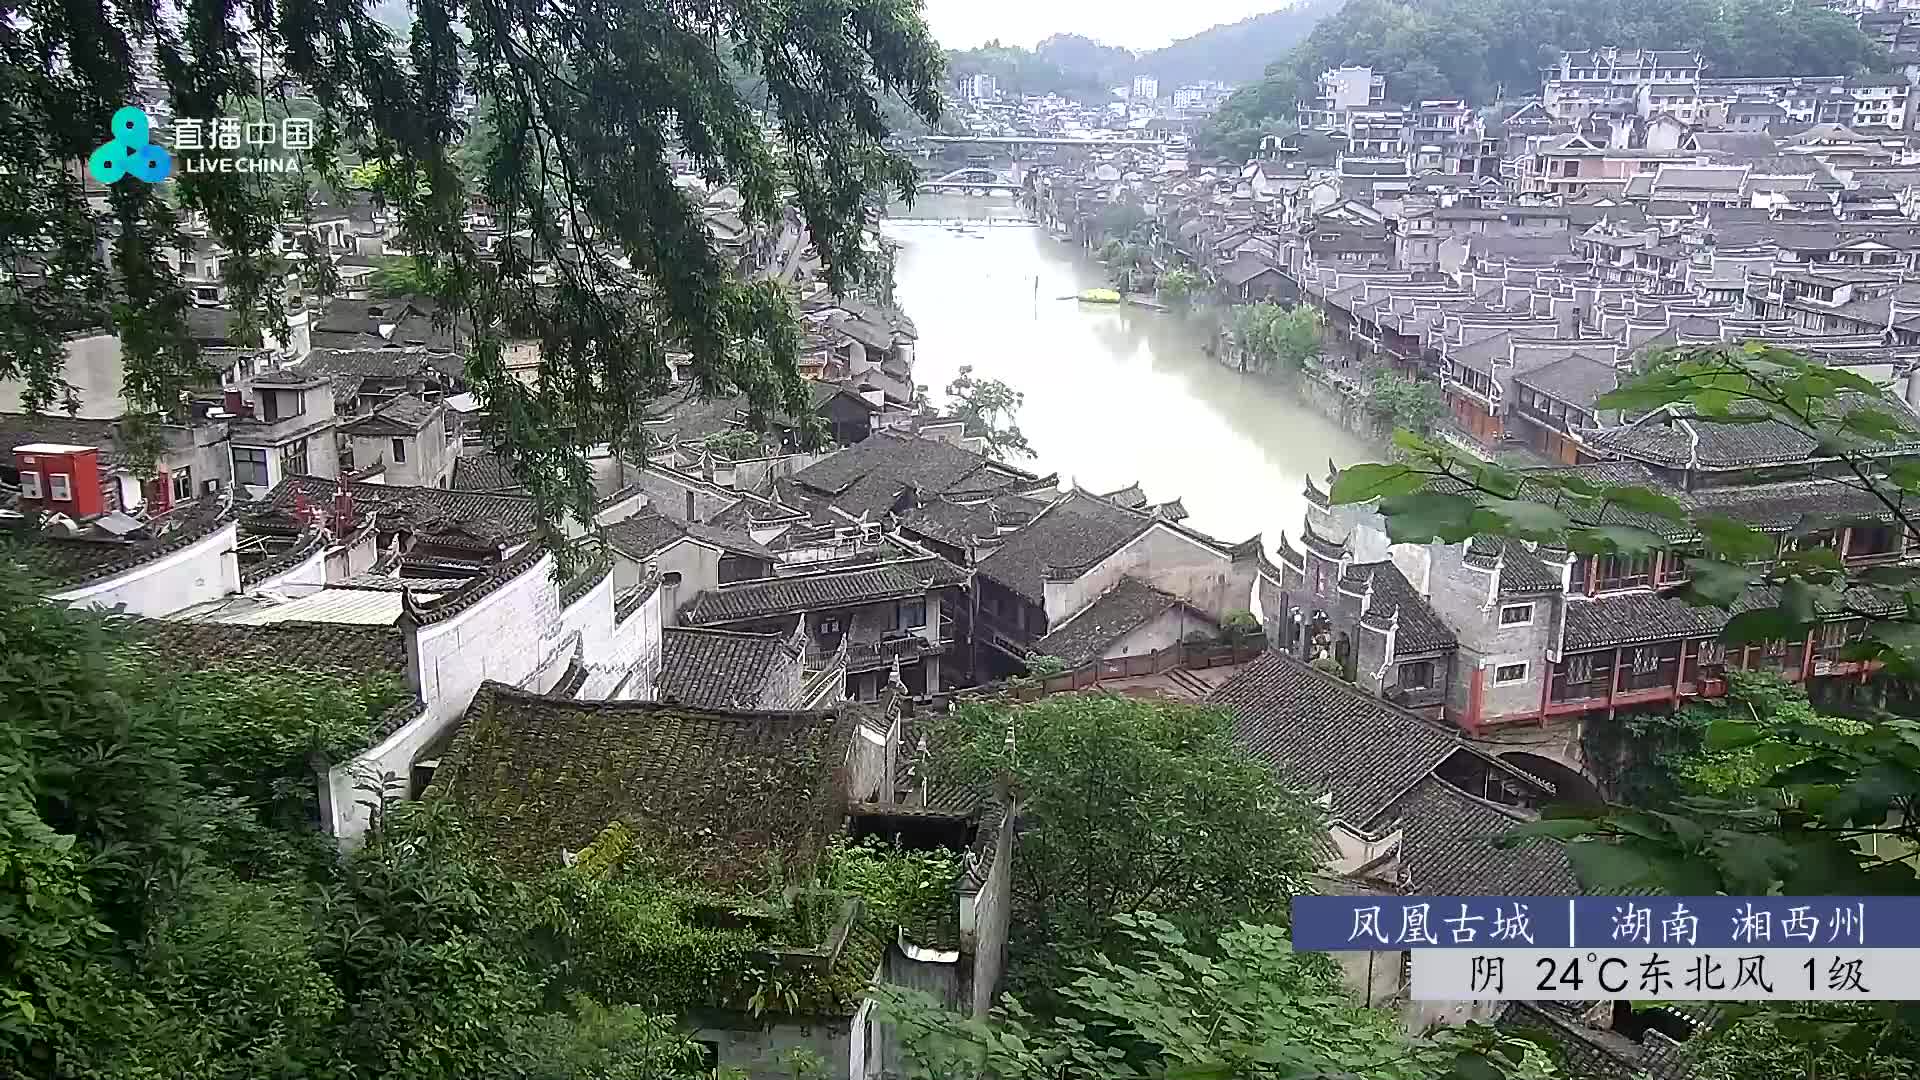 Fenghuang So. 07:48